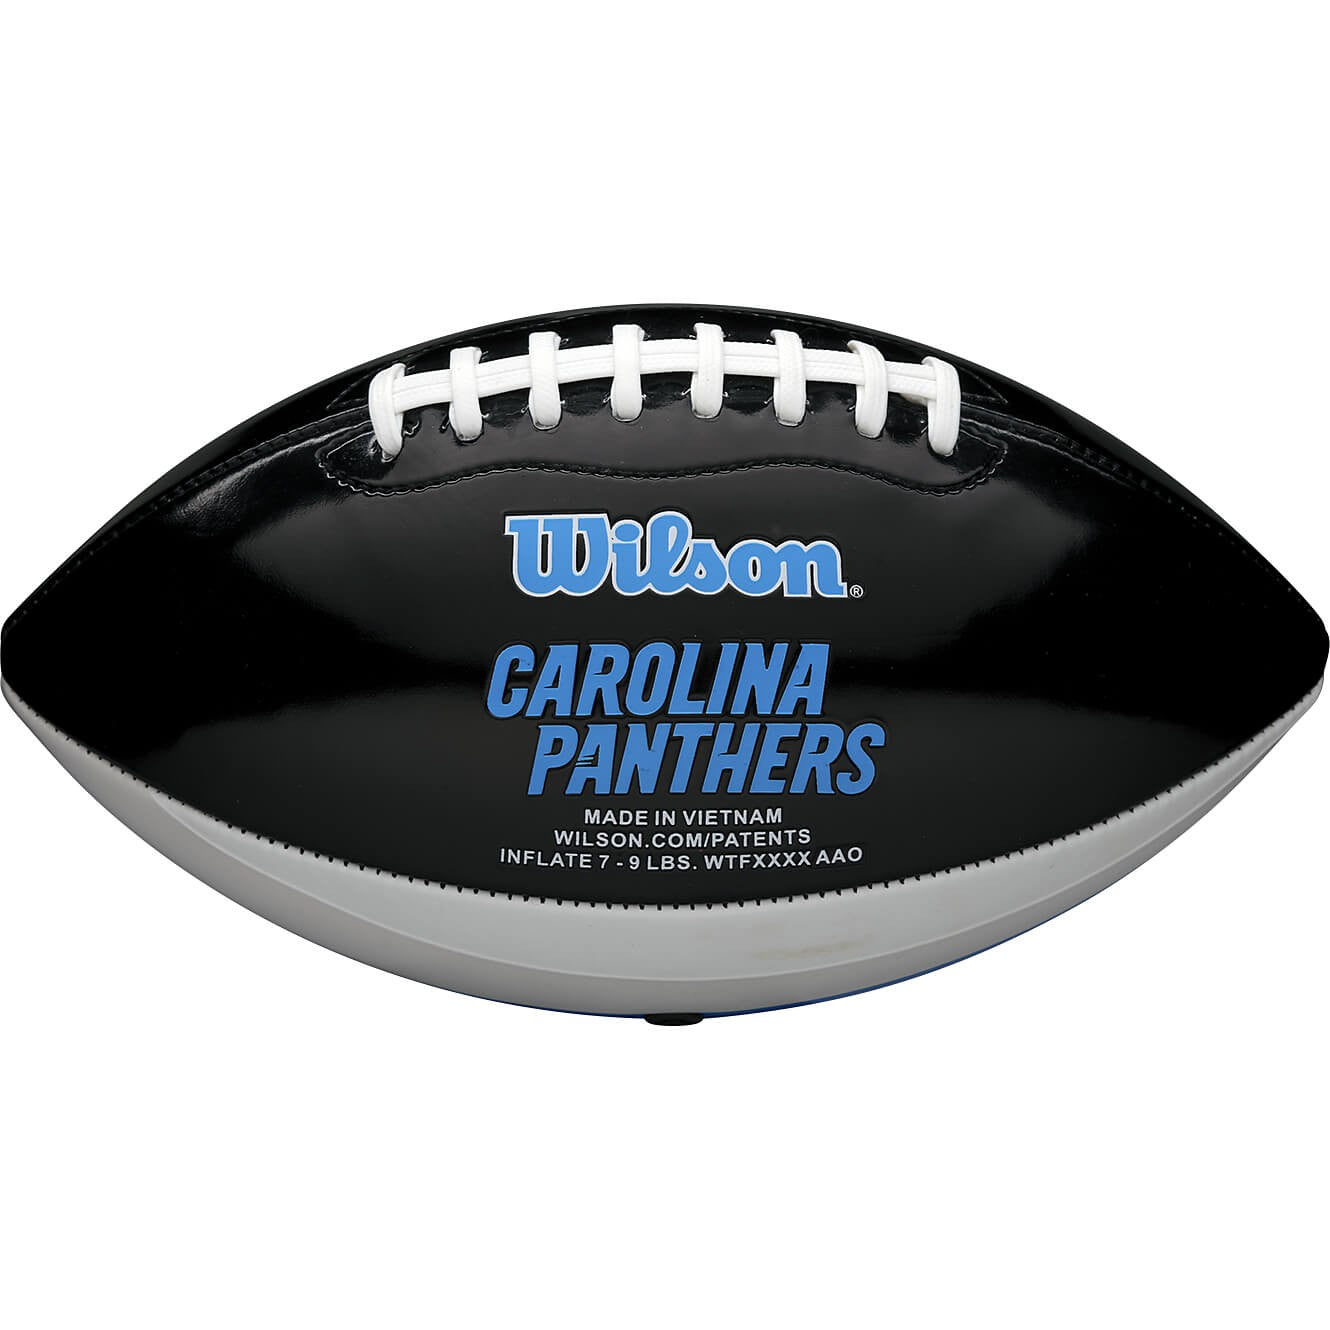 WILSON MINI NFL TEAM PEEWEE FB TEAM Carolina Panthers (SZ. CA)